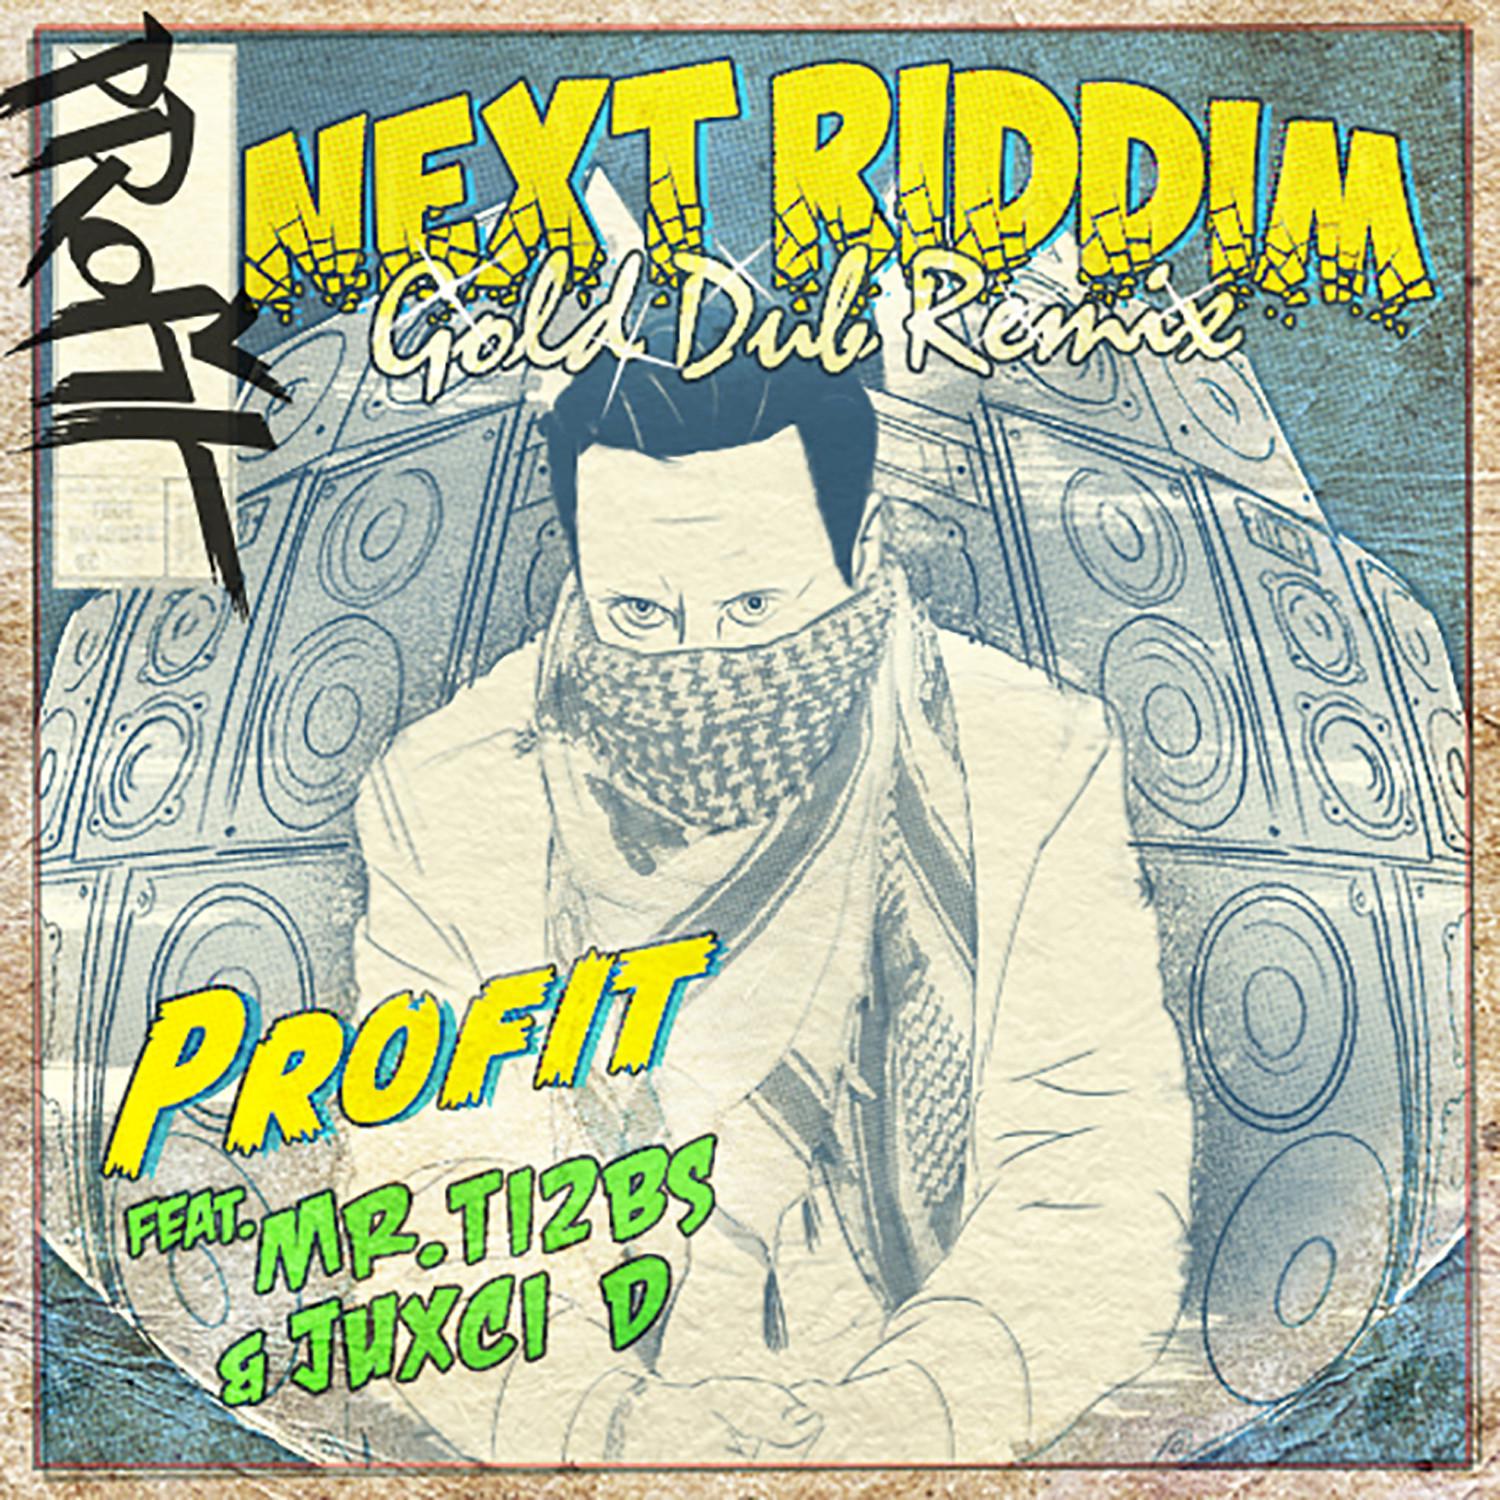 Next Riddim (feat. Mr. Ti2bs, Juxci D)